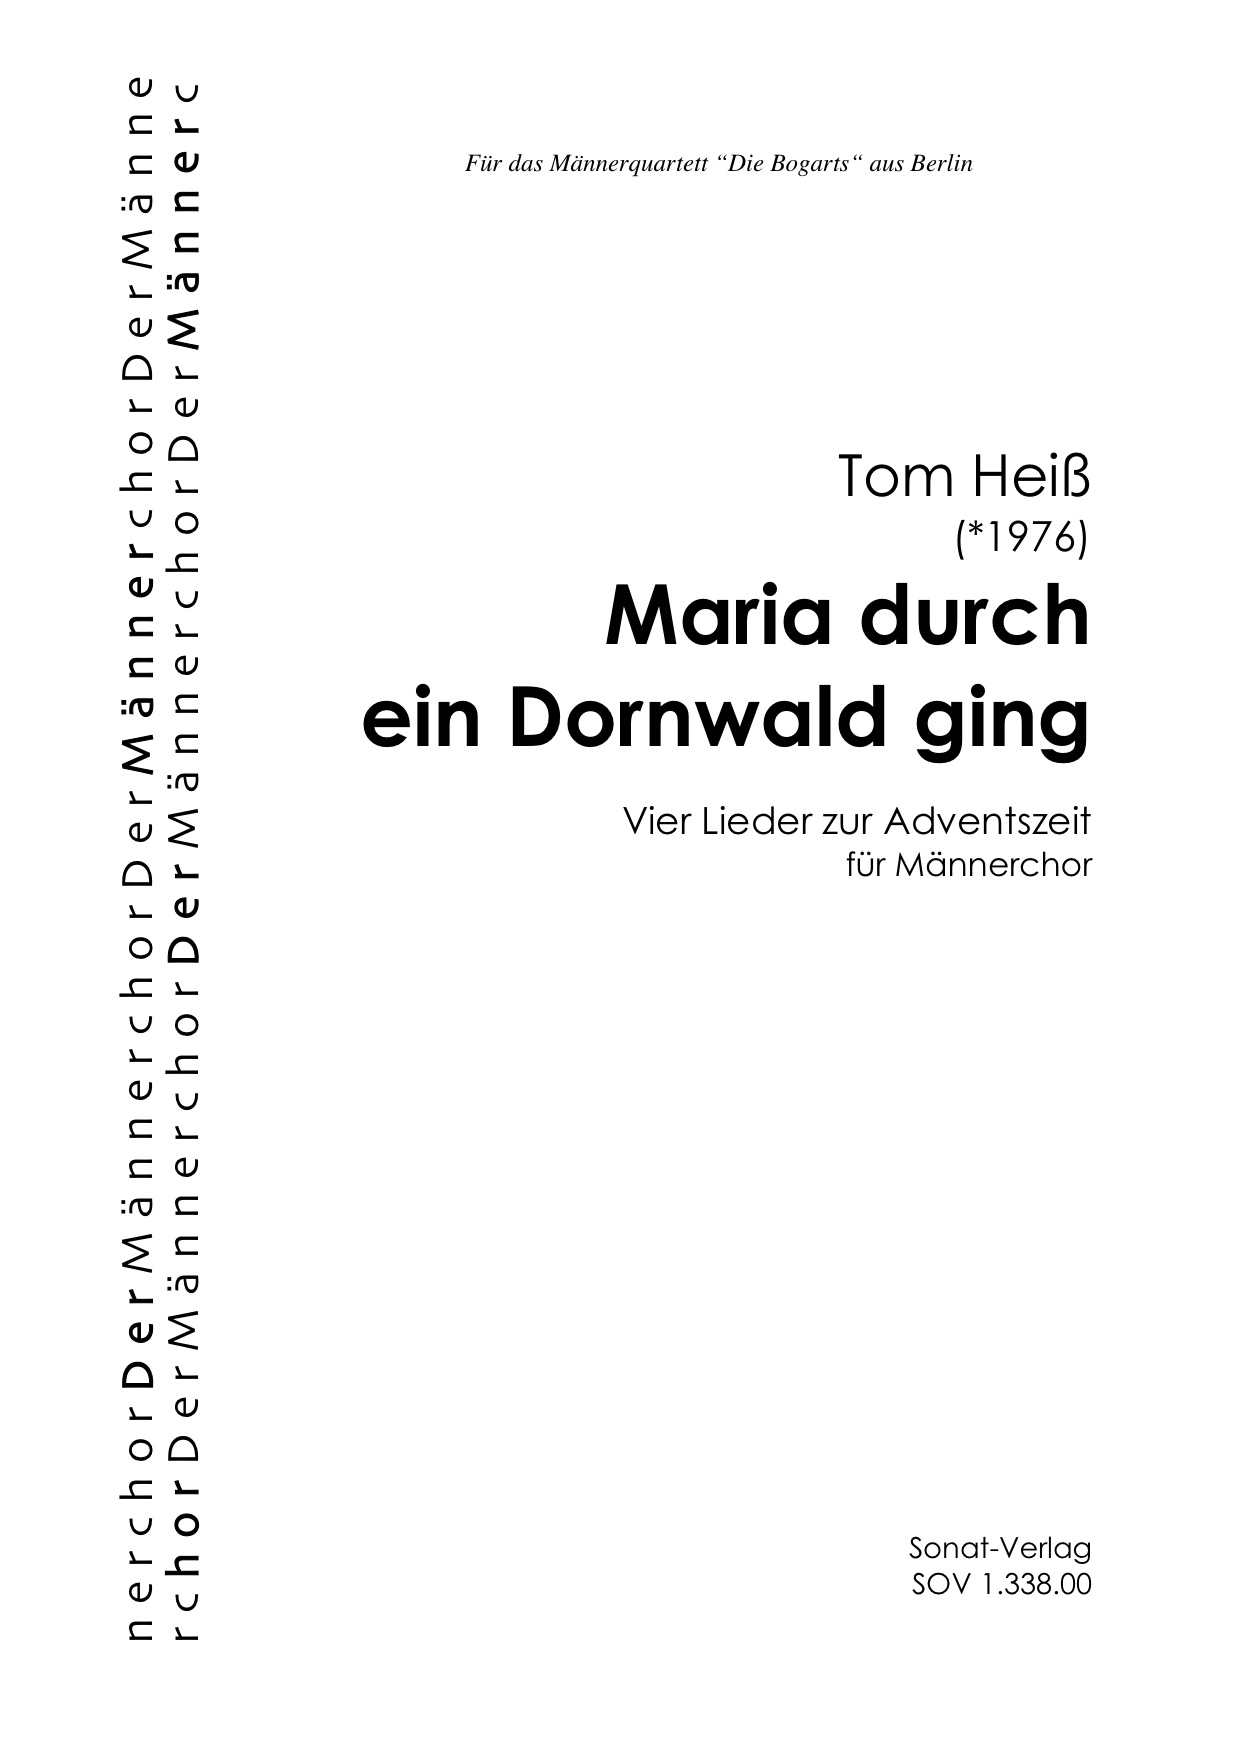 Heiss, T. (*1976): Maria durch ein Dornwald ging - Vier Adventslieder für Männerchor